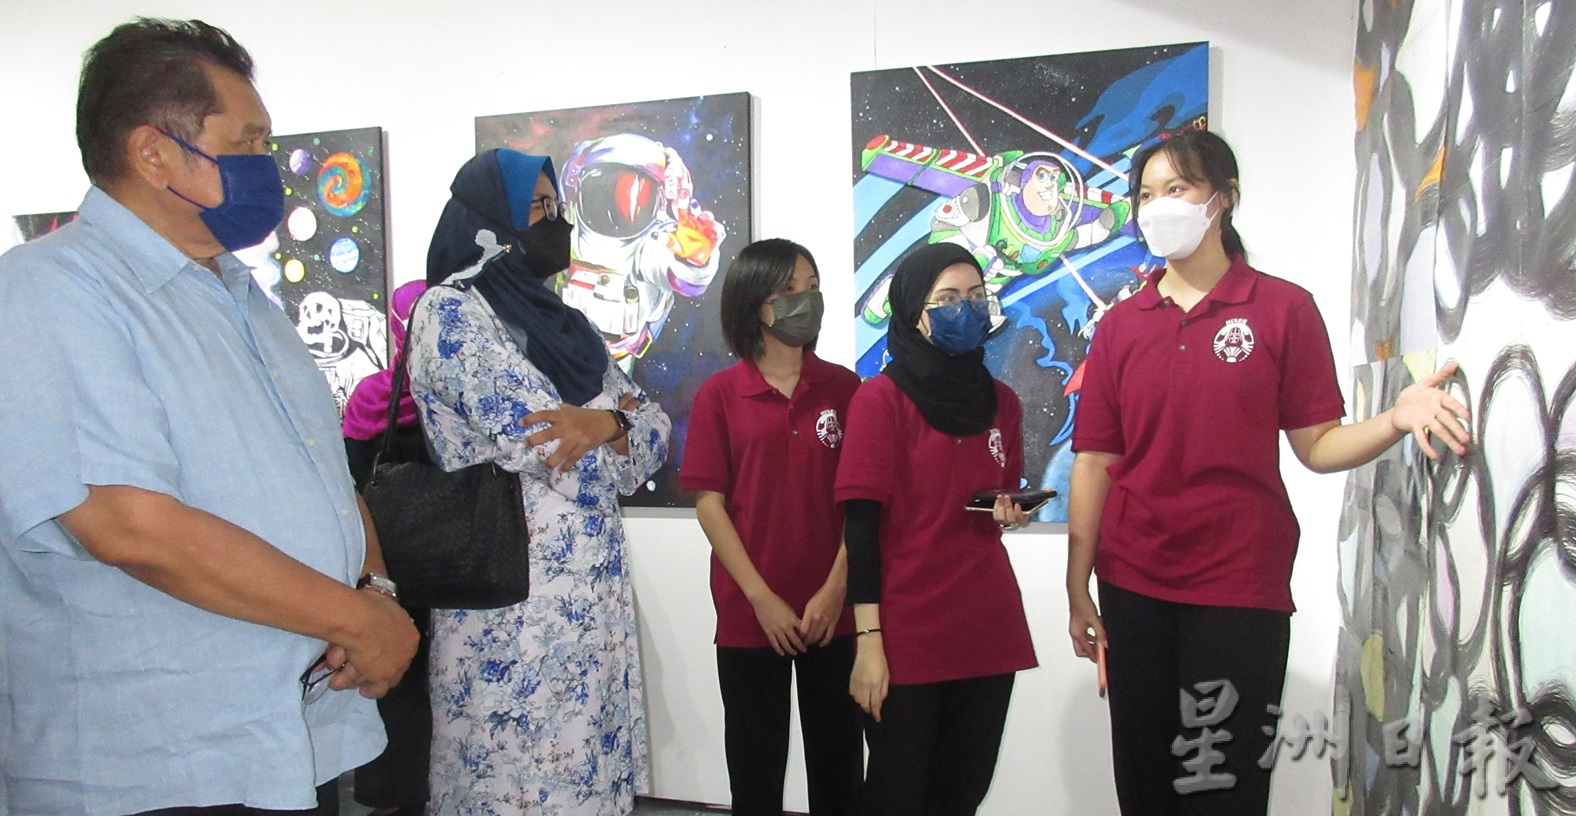 霹：霹雳州卓越人才中心参加国际艺术展